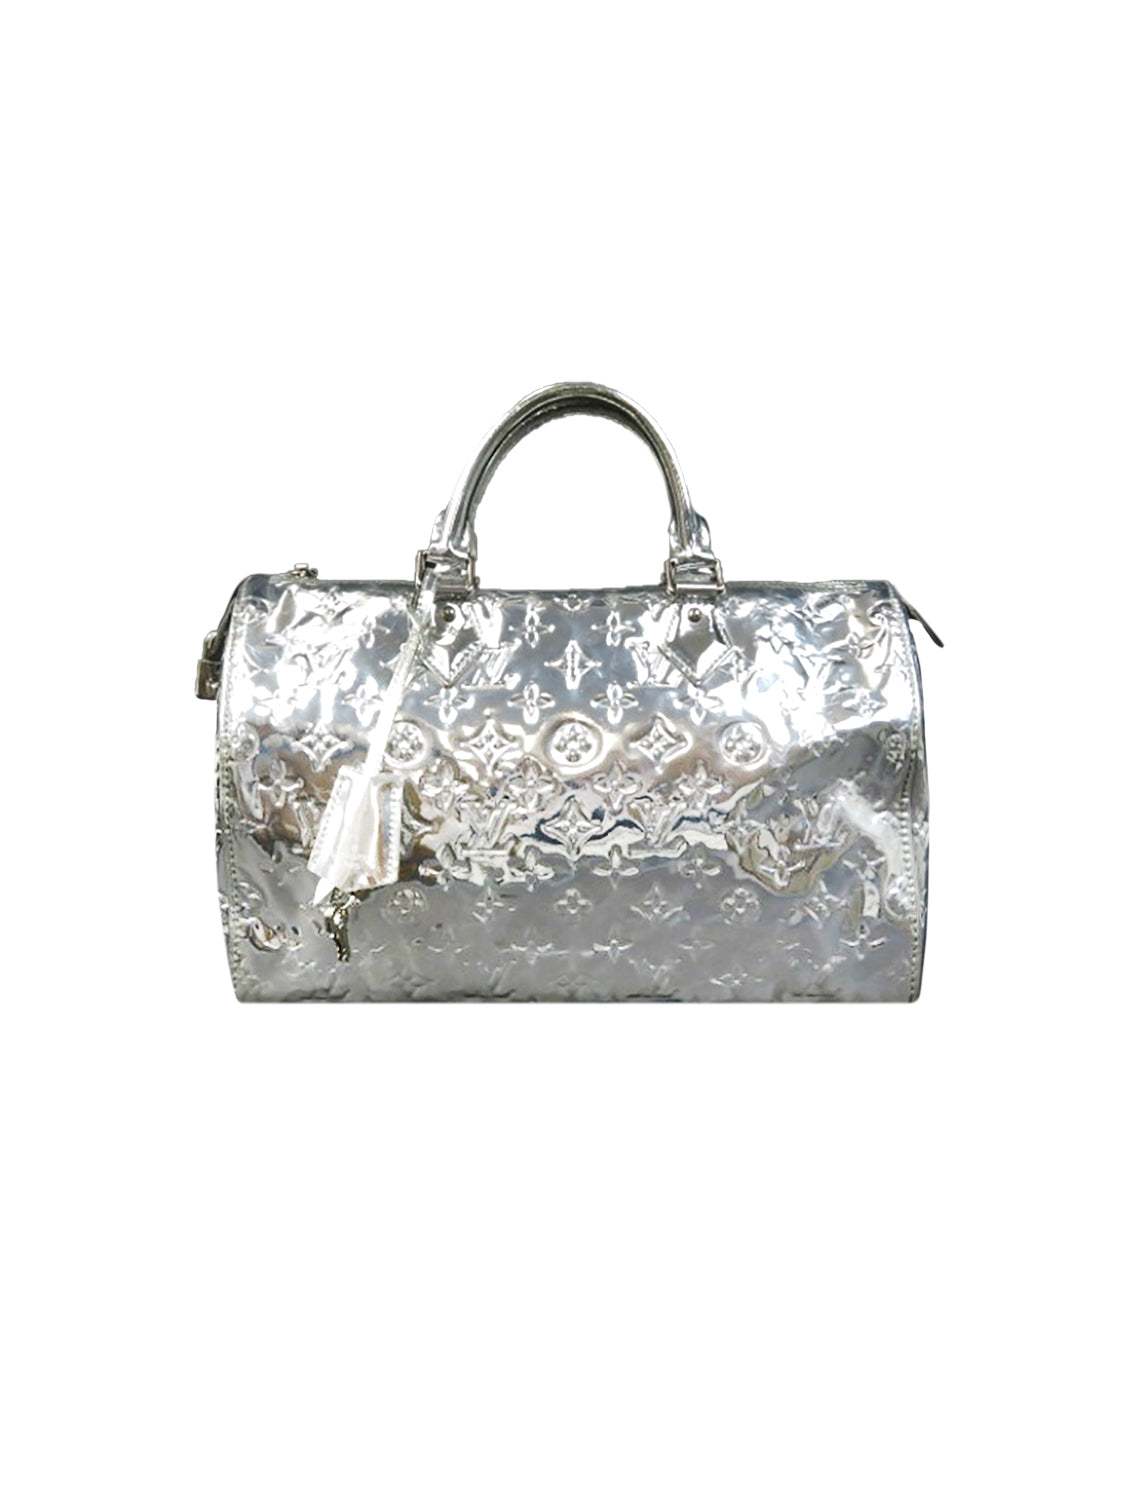 Louis Vuitton Rare Speedy 30 Handbag